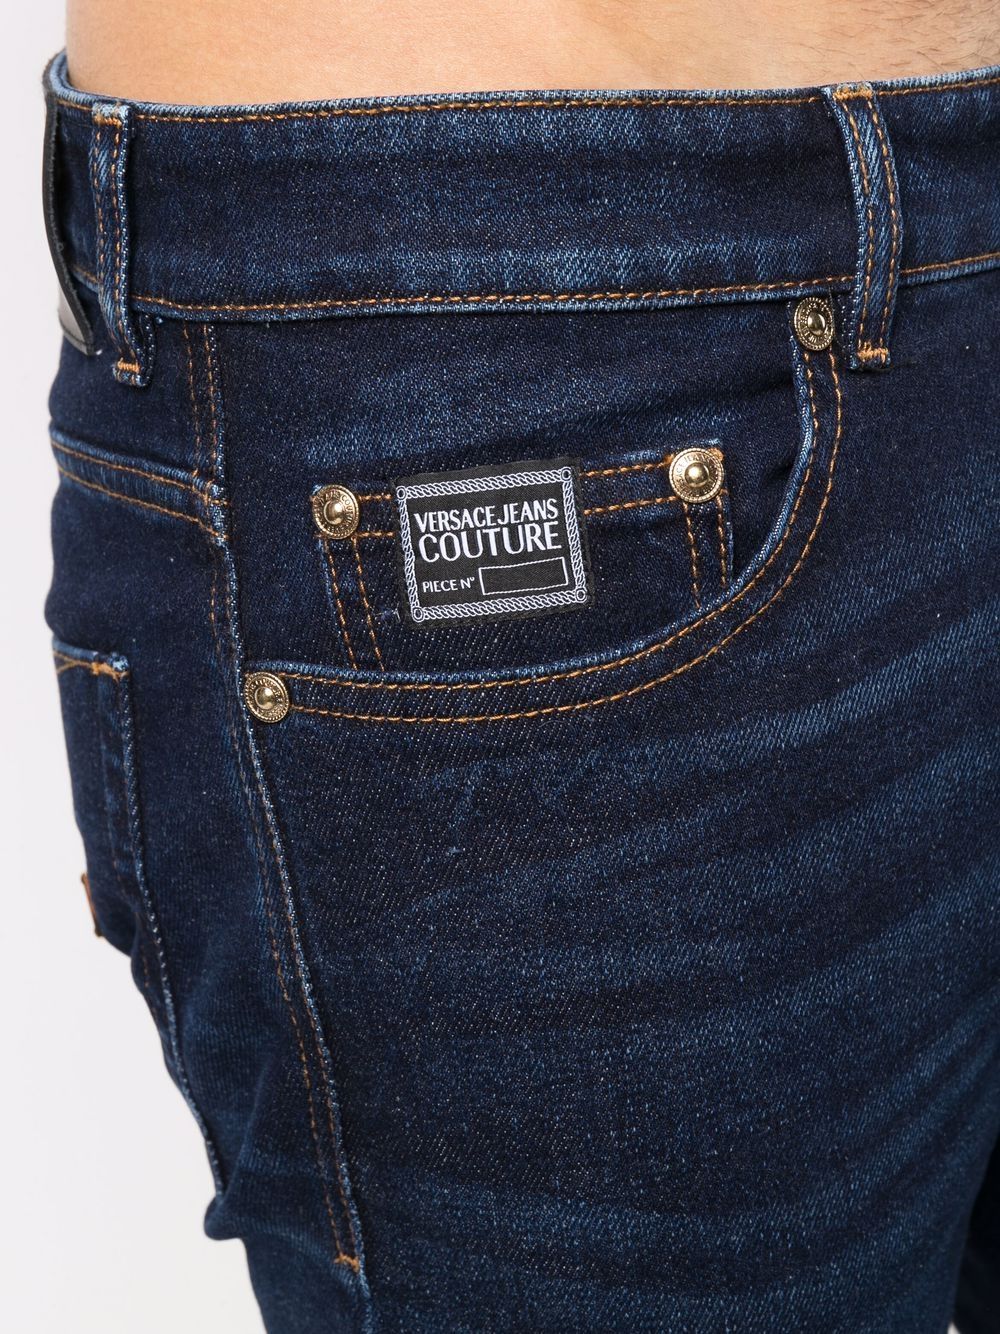 фото Versace jeans couture узкие джинсы средней посадки